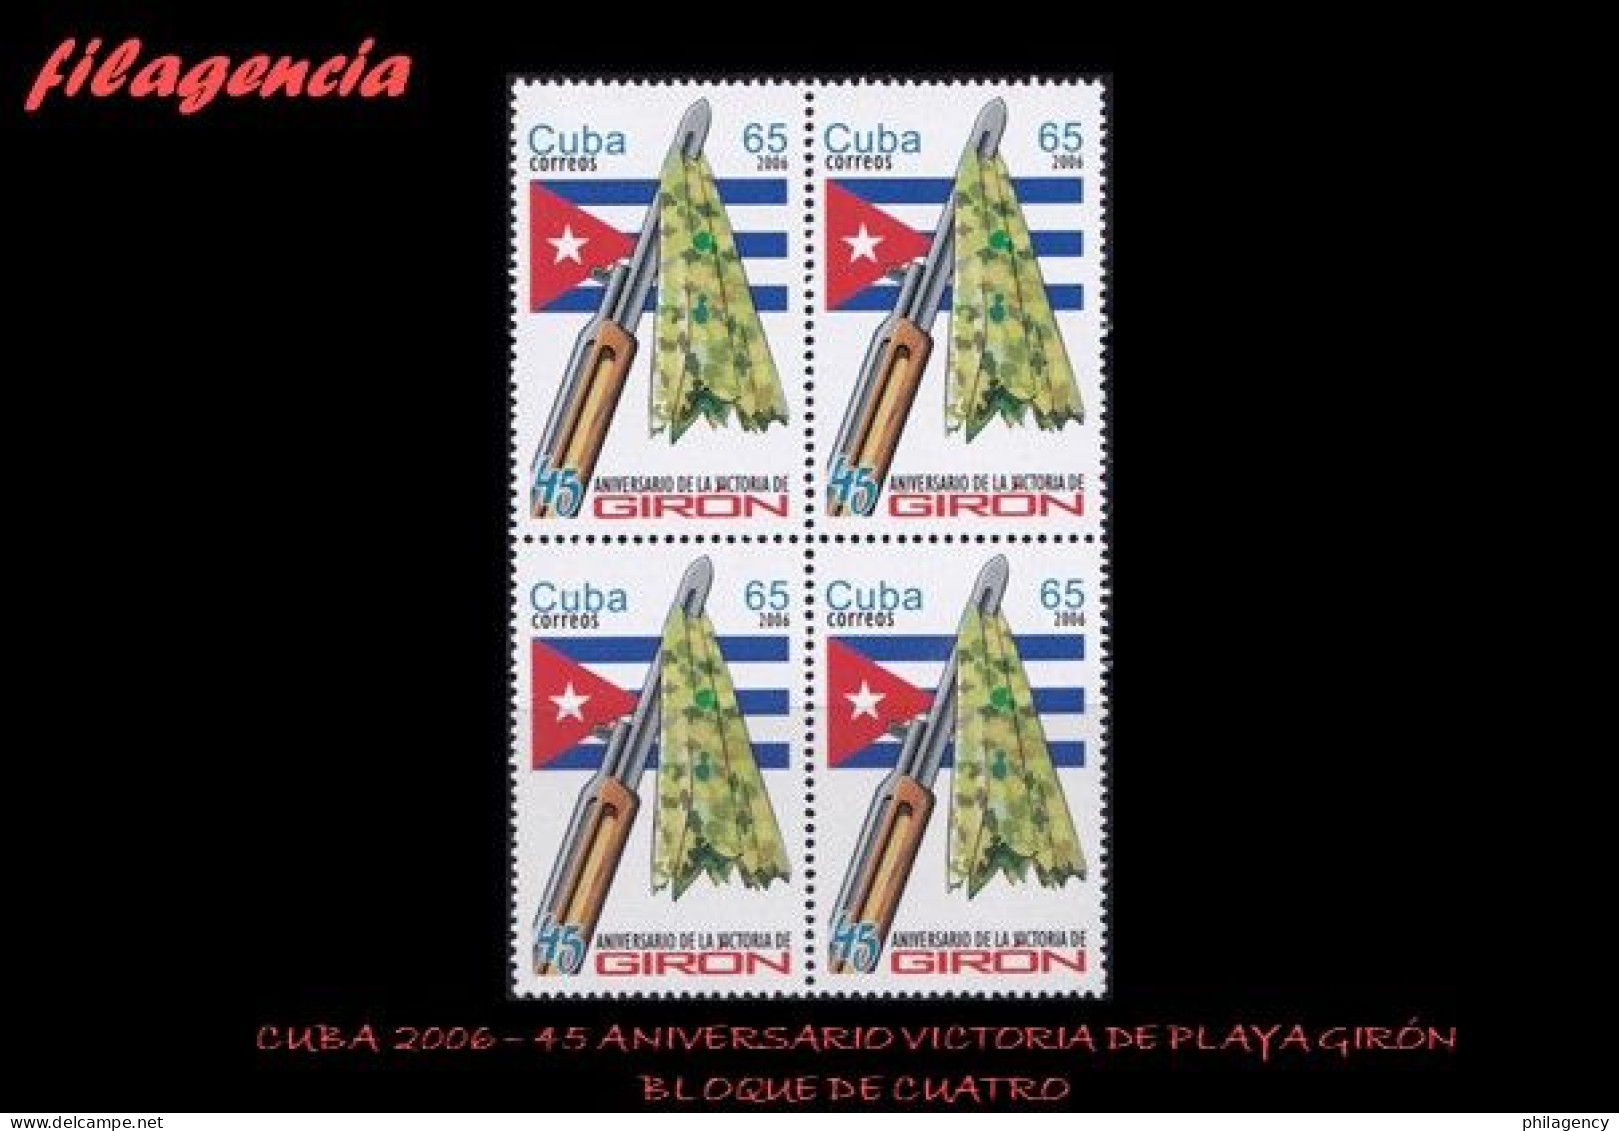 CUBA. BLOQUES DE CUATRO. 2006-09 45 ANIVERSARIO DE LA VICTORIA DE PLAYA GIRÓN - Ongebruikt